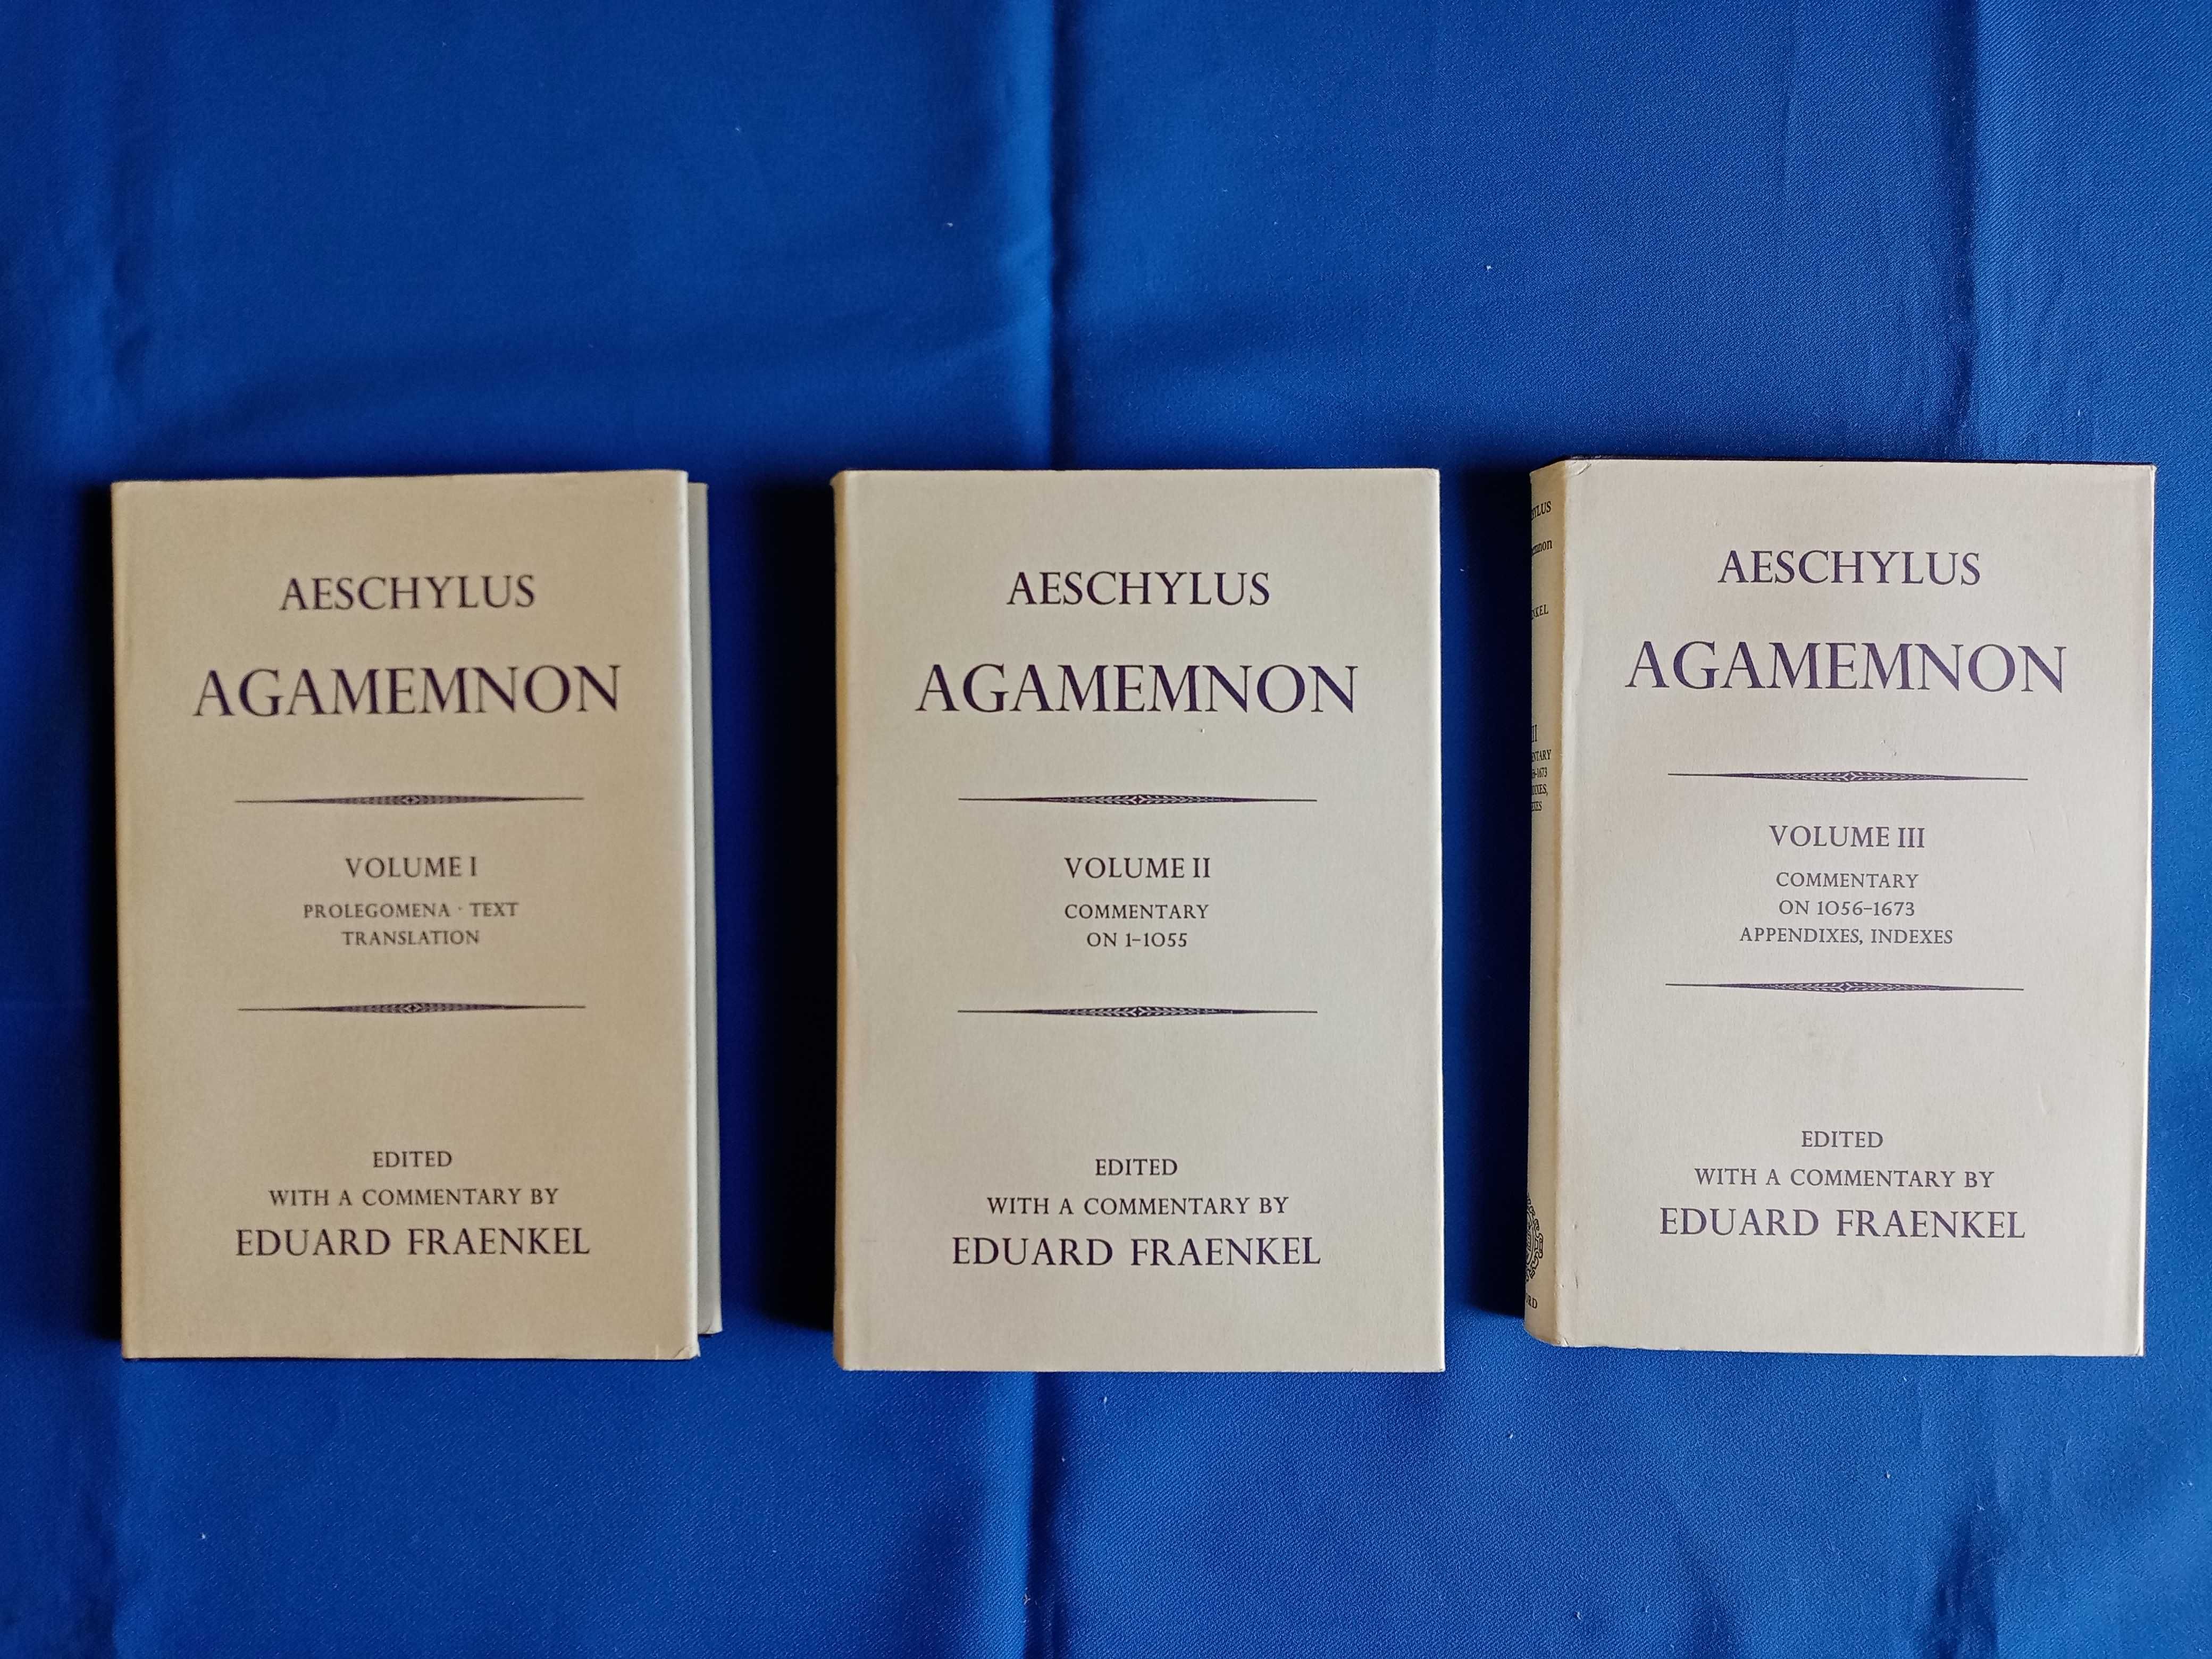 Aeschylus Agamemnon. Volumes completos (ed. comentada por E. Fraenkel)